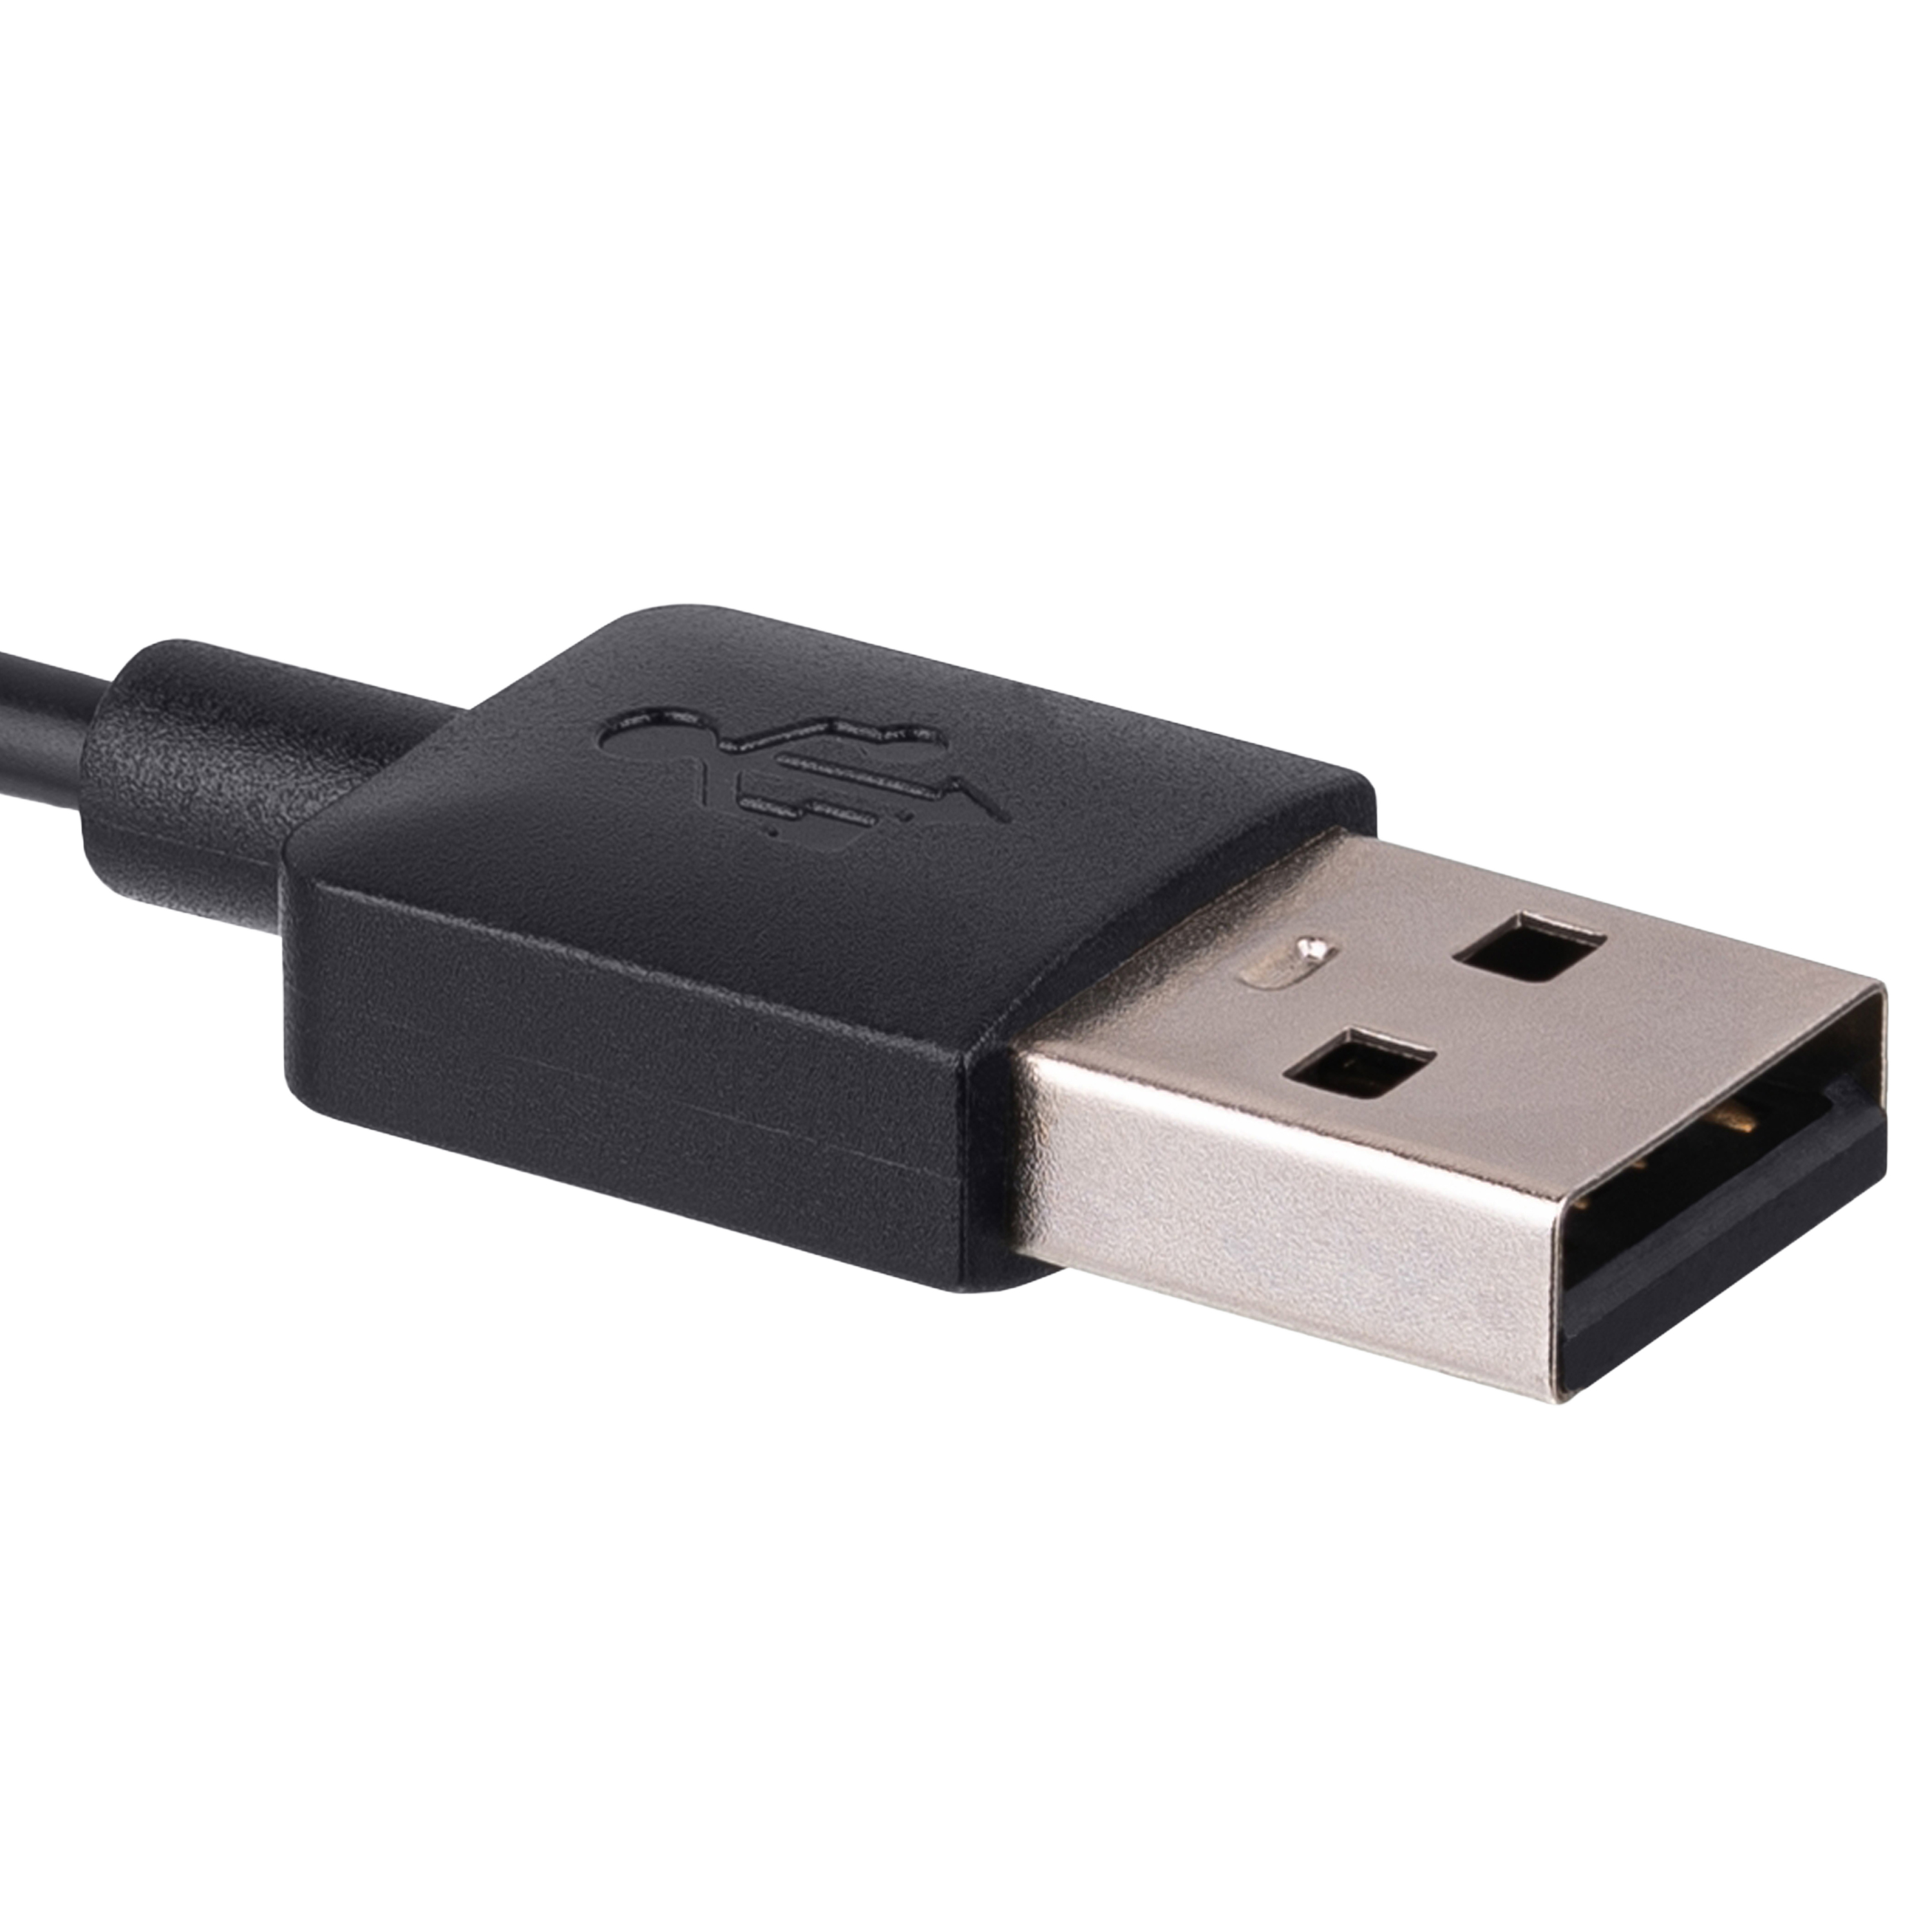 B Charger Charge Cable for Garmin Fenix55x5s Vivoactive 3 Vivosport 